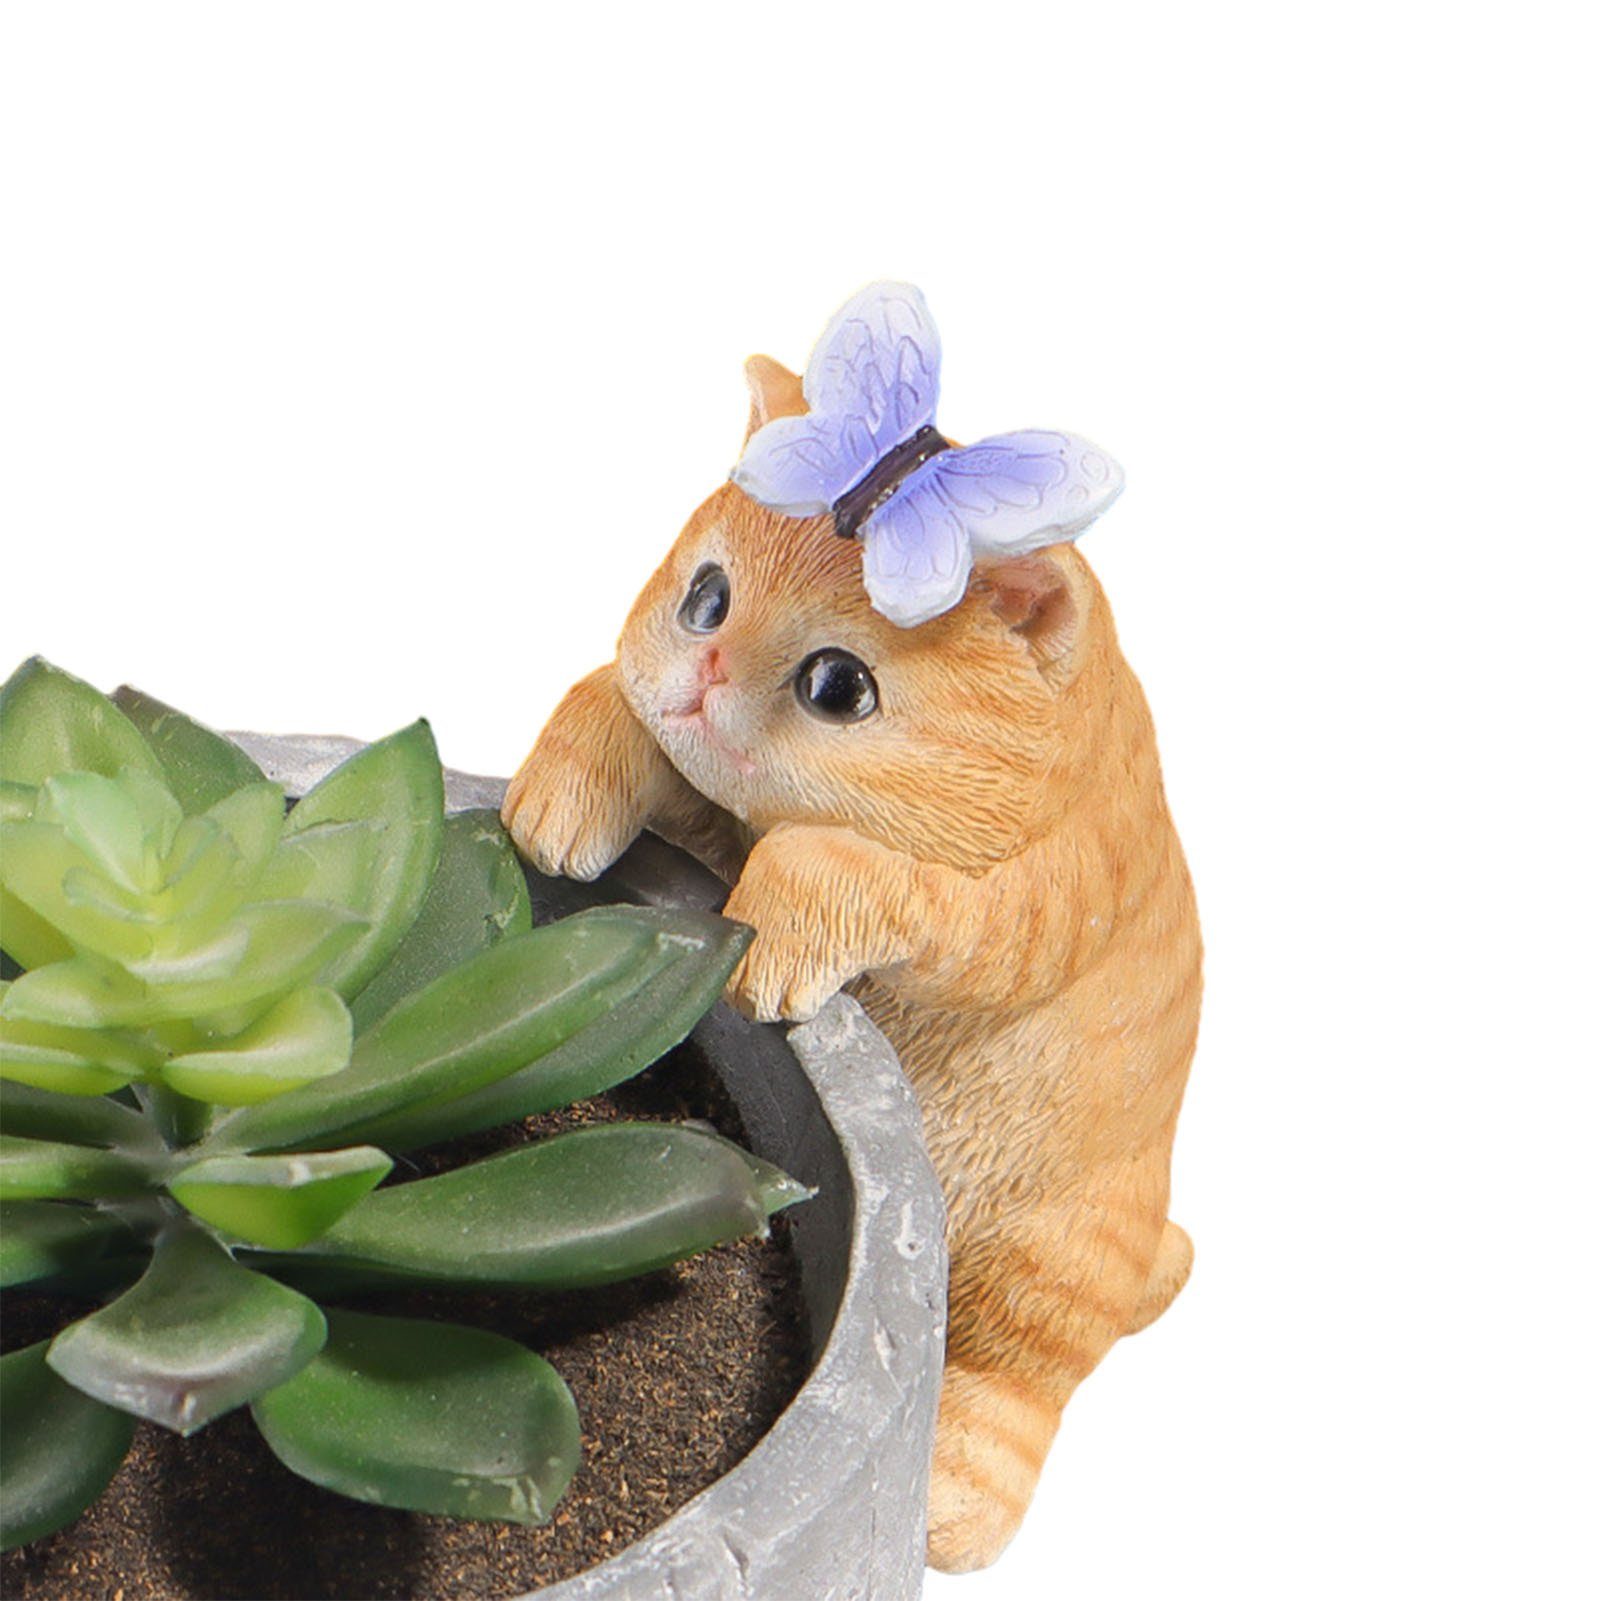 Blusmart Tierfigur Katzen-Miniatur-Ornamente, Feengarten-Zubehör Für Niedliche bs38015